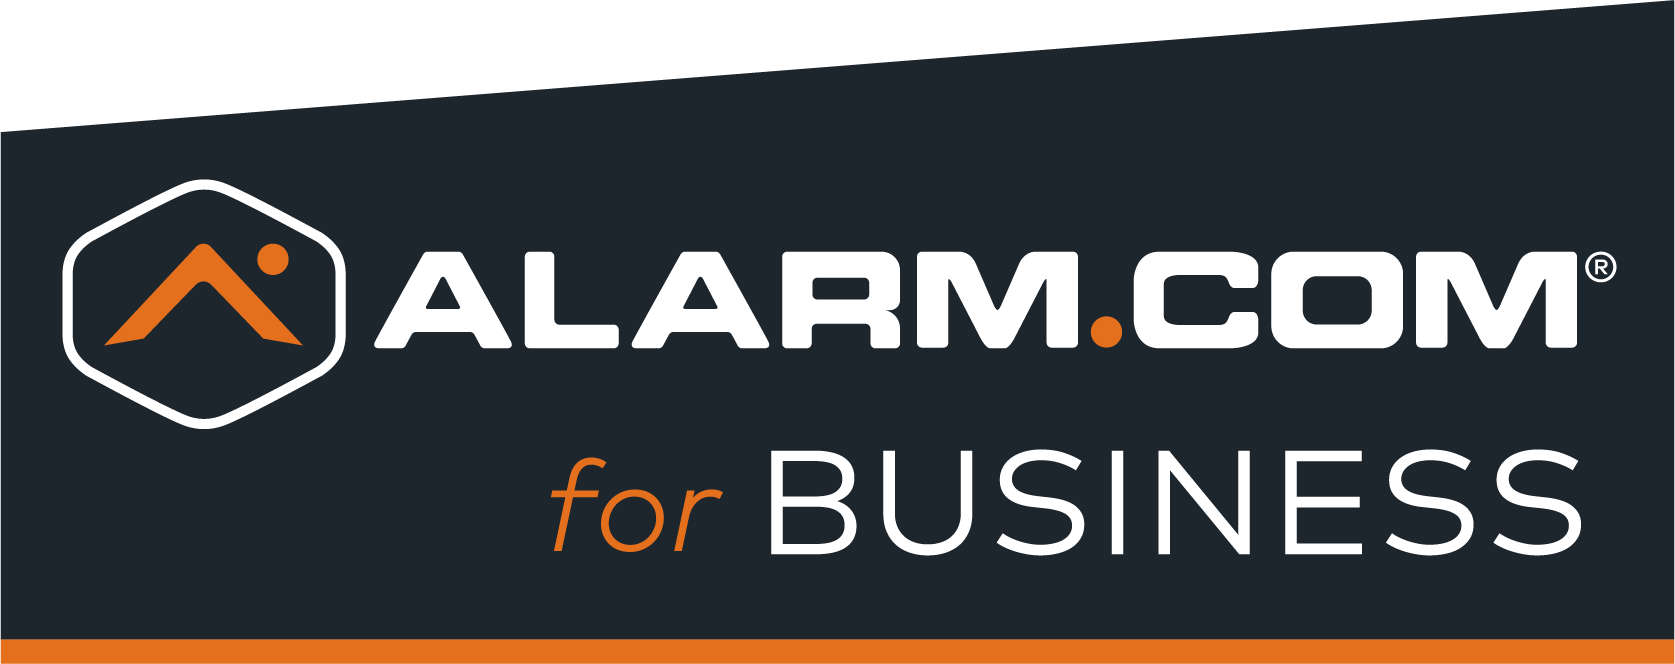 Alarm.com for business